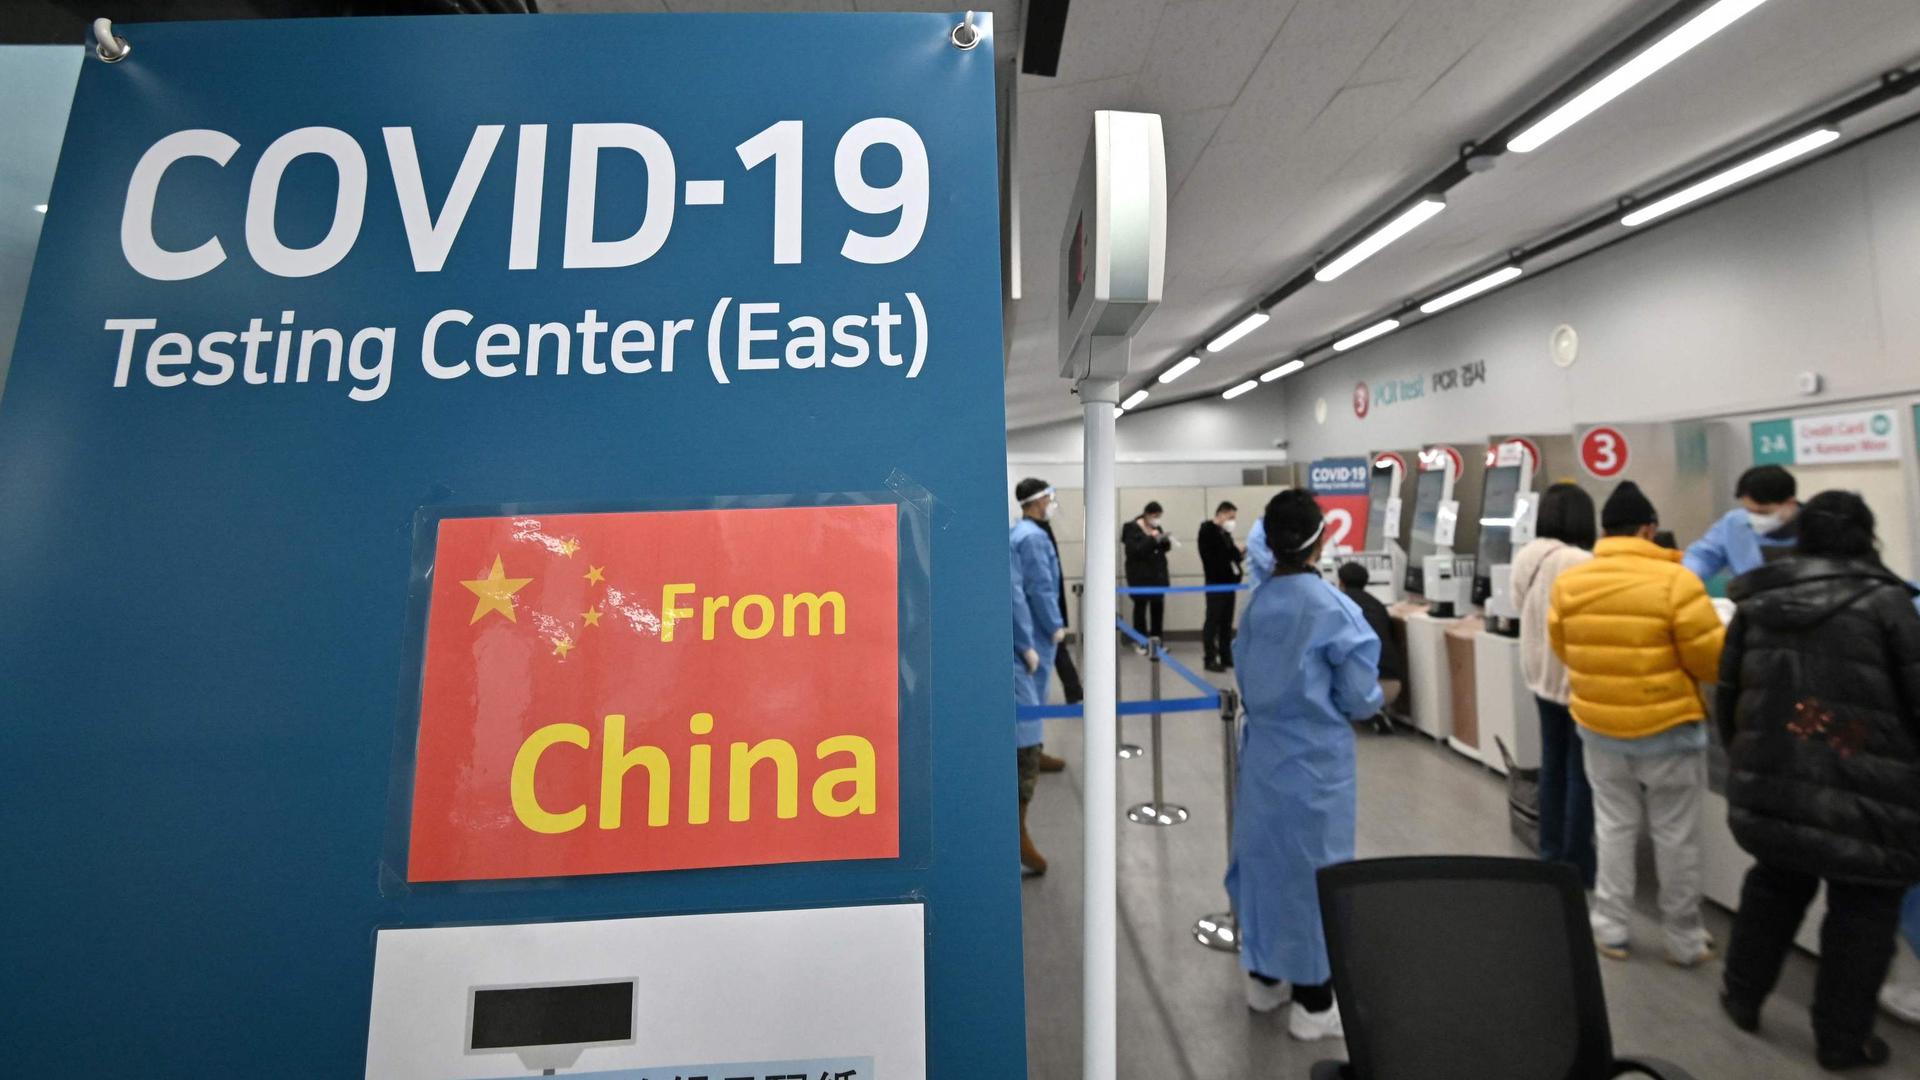 Trabalhadores da saúde guiam os viajantes que chegam da China num centro de testes covid-19 no Aeroporto Internacional de Incheon, na Coreia do Sul. 